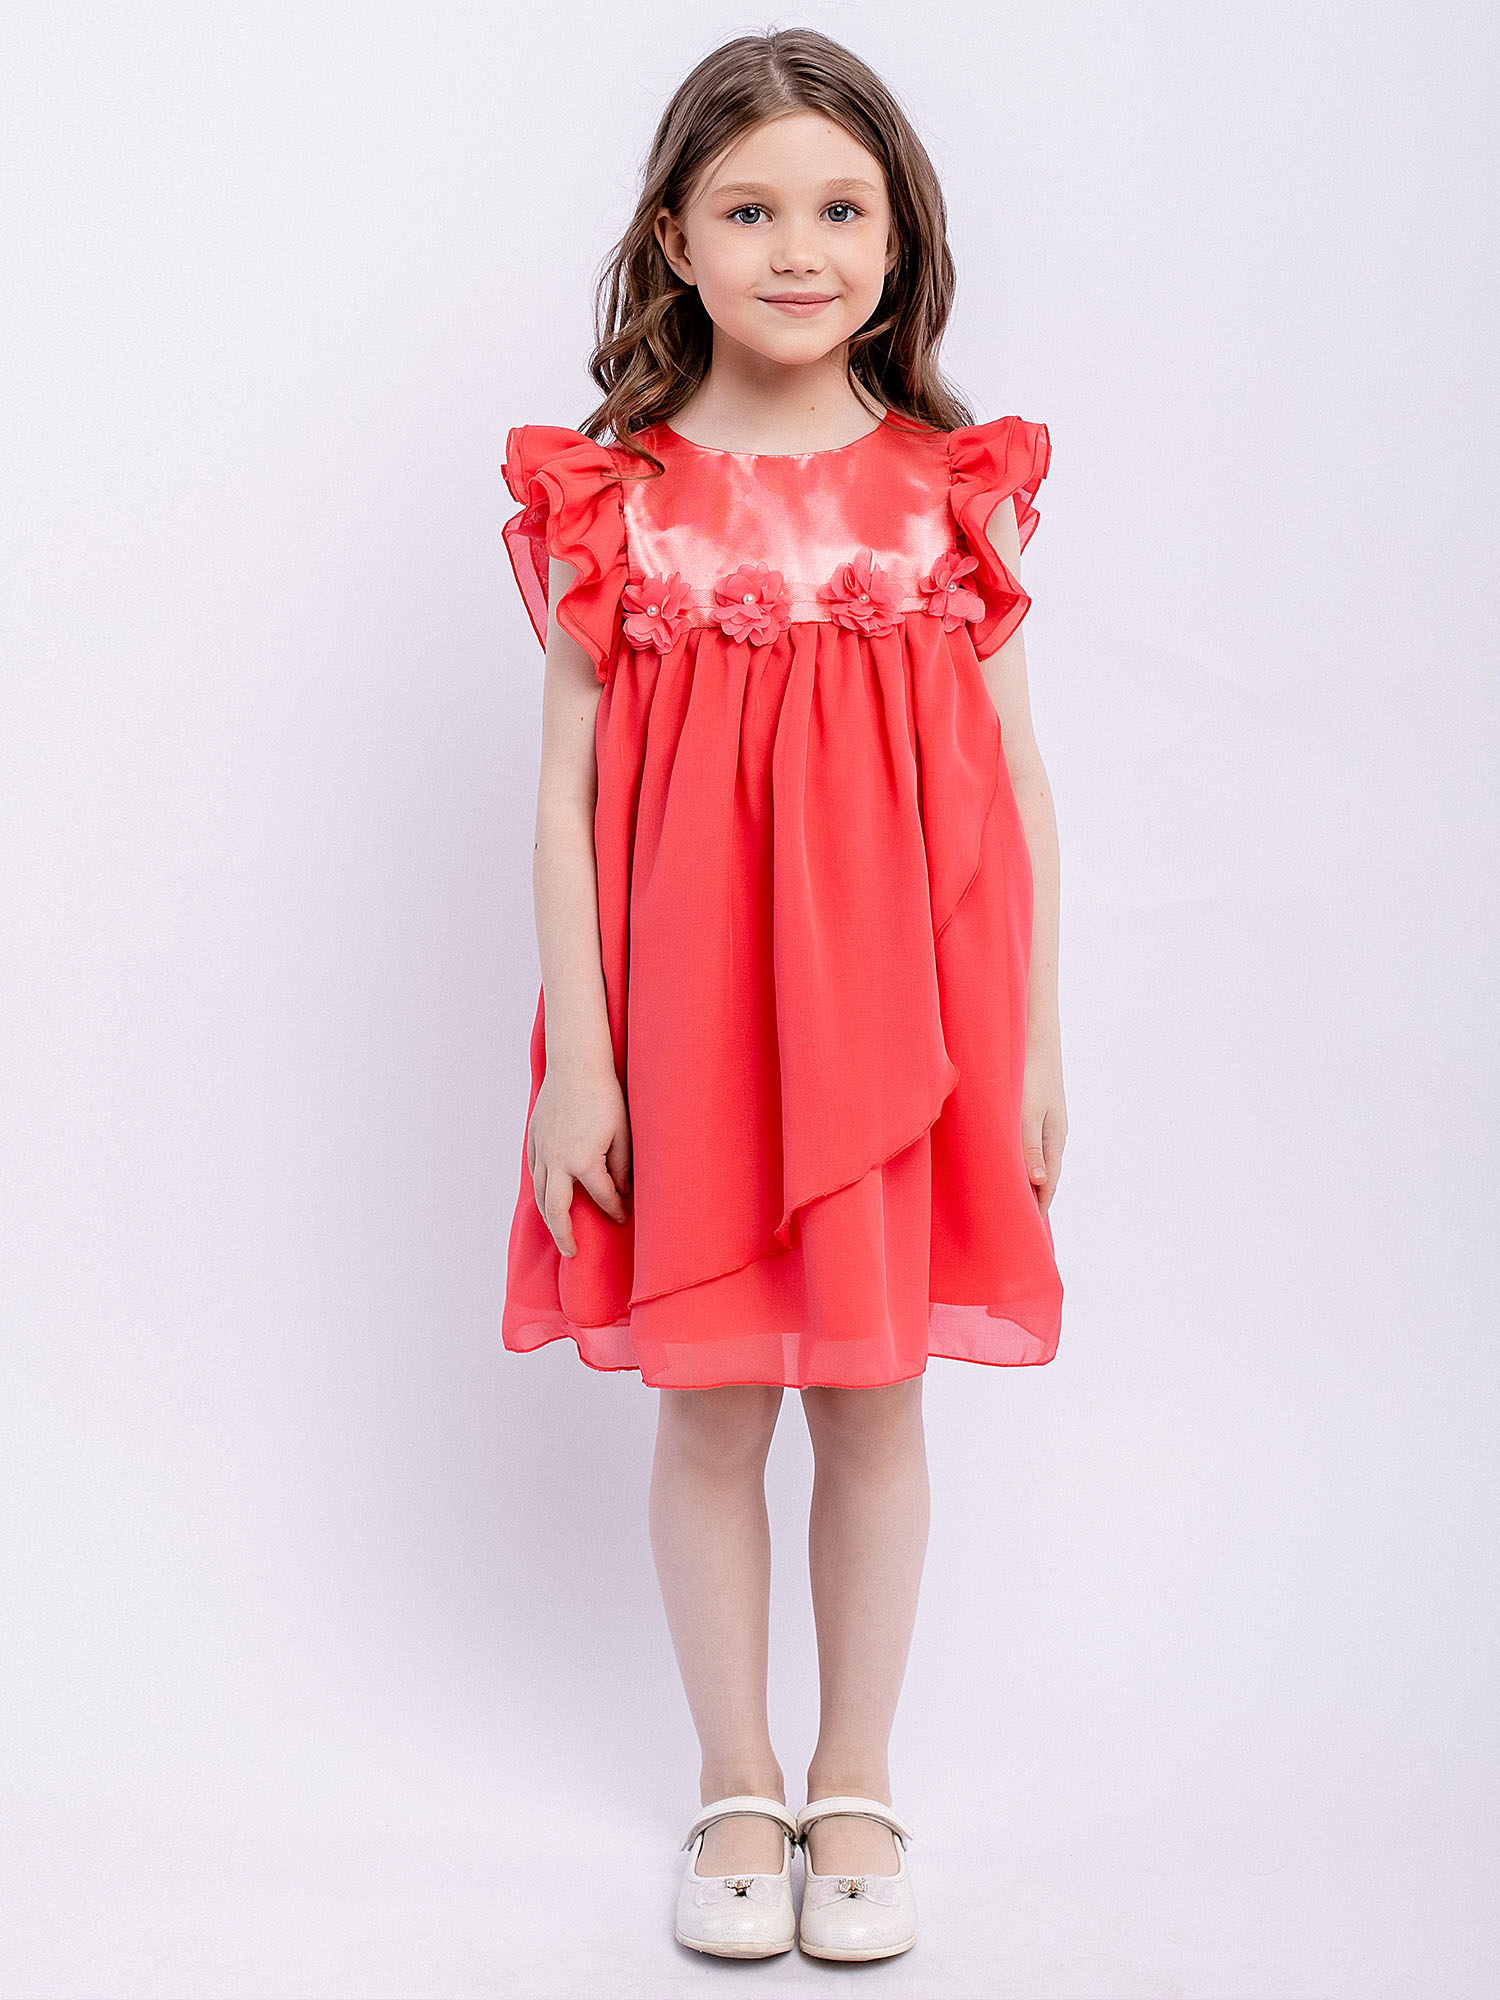 Платье детское Batik 010 п22-2, розовый фламинго, 110 платье детское batik 010 п22 2 розовый фламинго 104